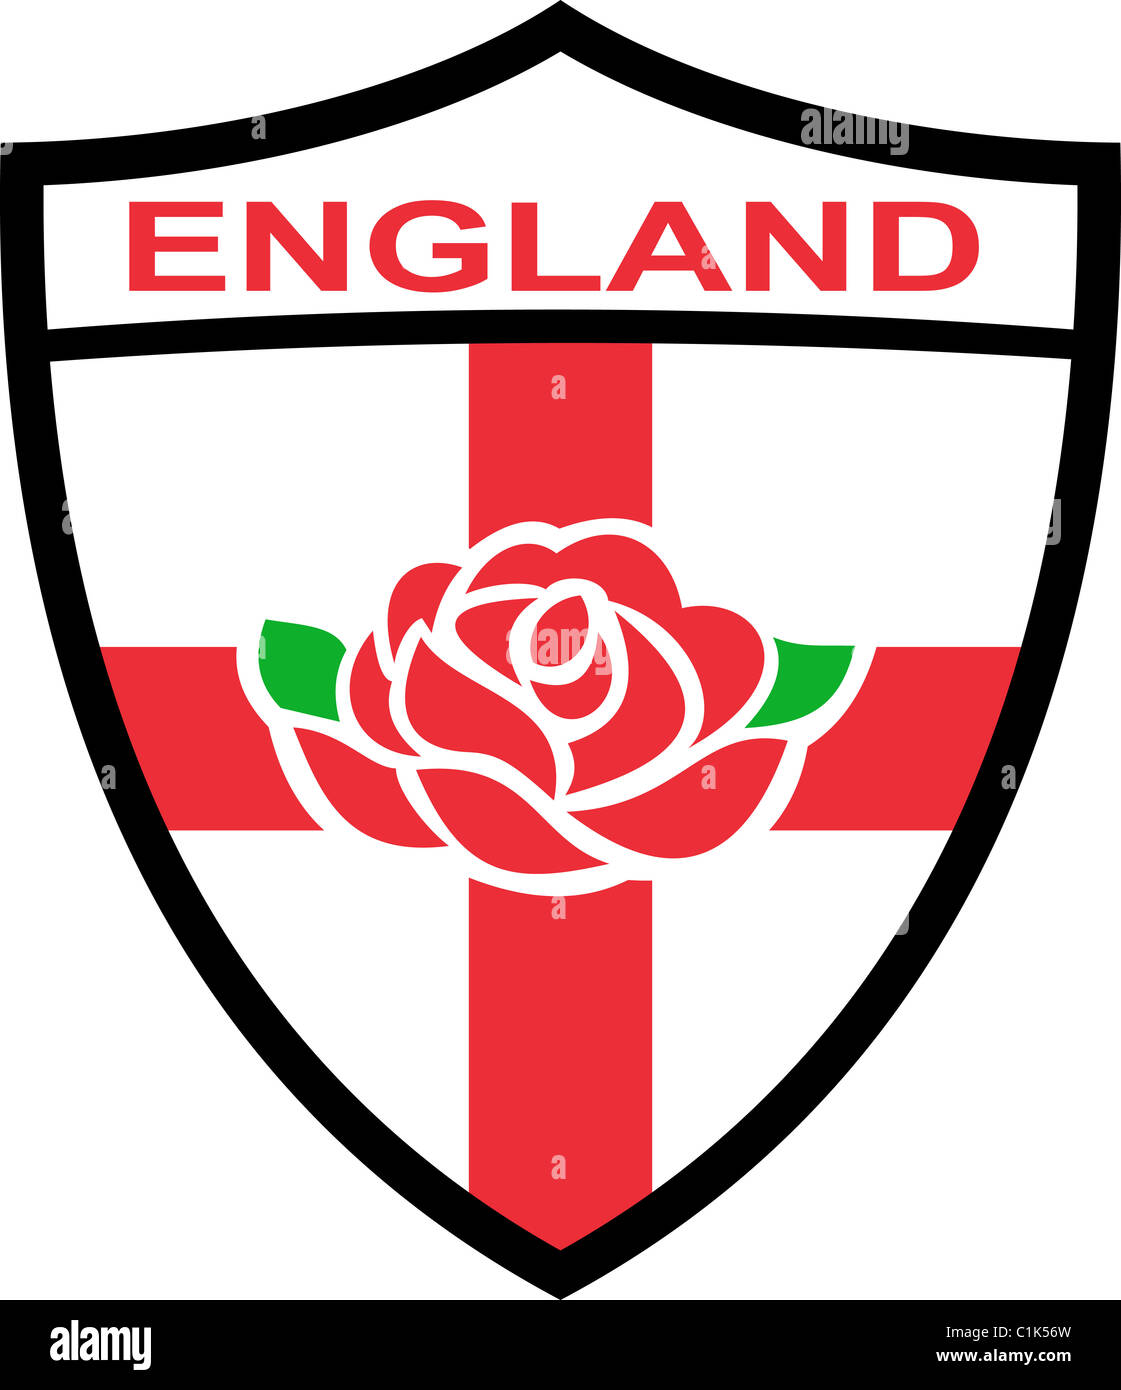 Abbildung von einem roten englischen stieg in Schild mit Flagge von England und Worte "England" Stockfoto